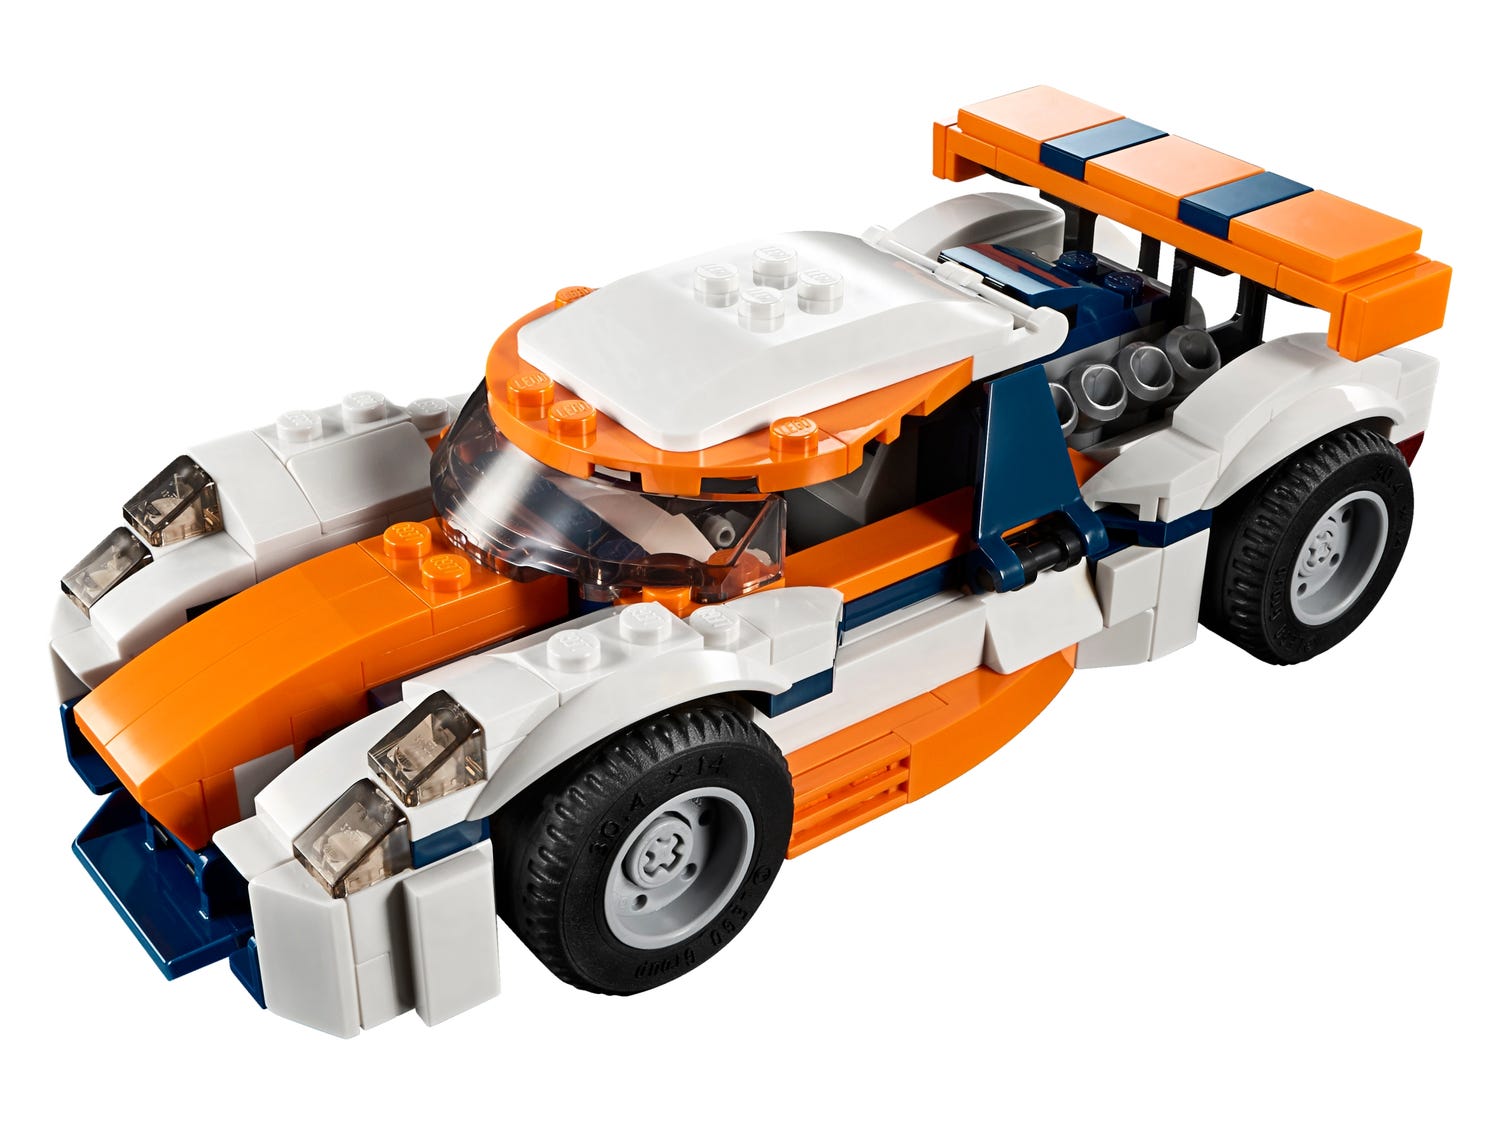 LEGO® 31089 - Auto da corsa